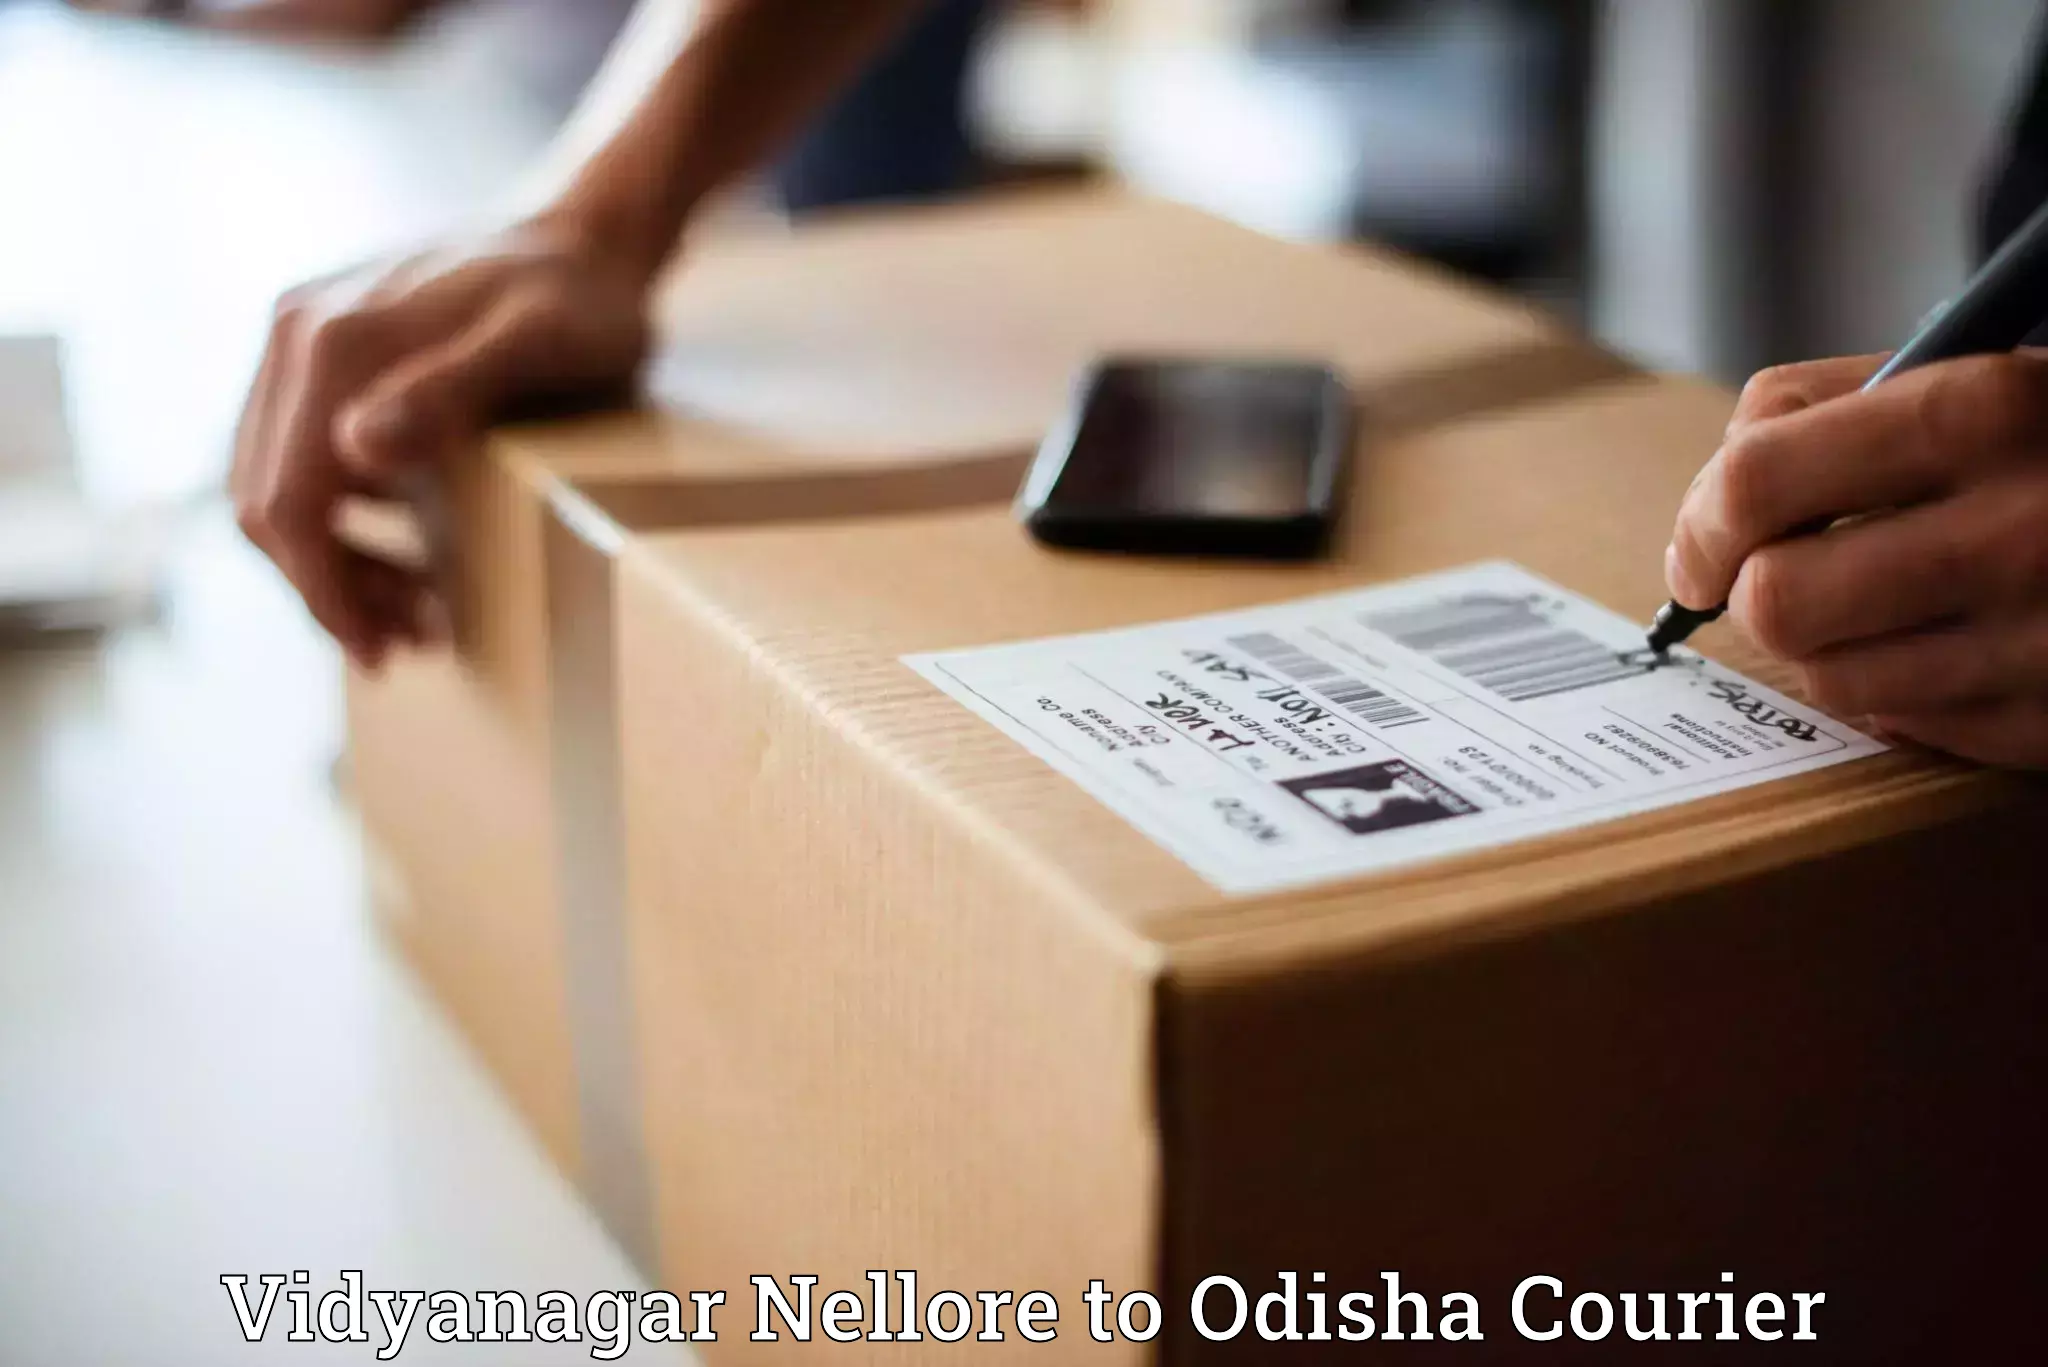 Courier services in Vidyanagar Nellore to Kishorenagar